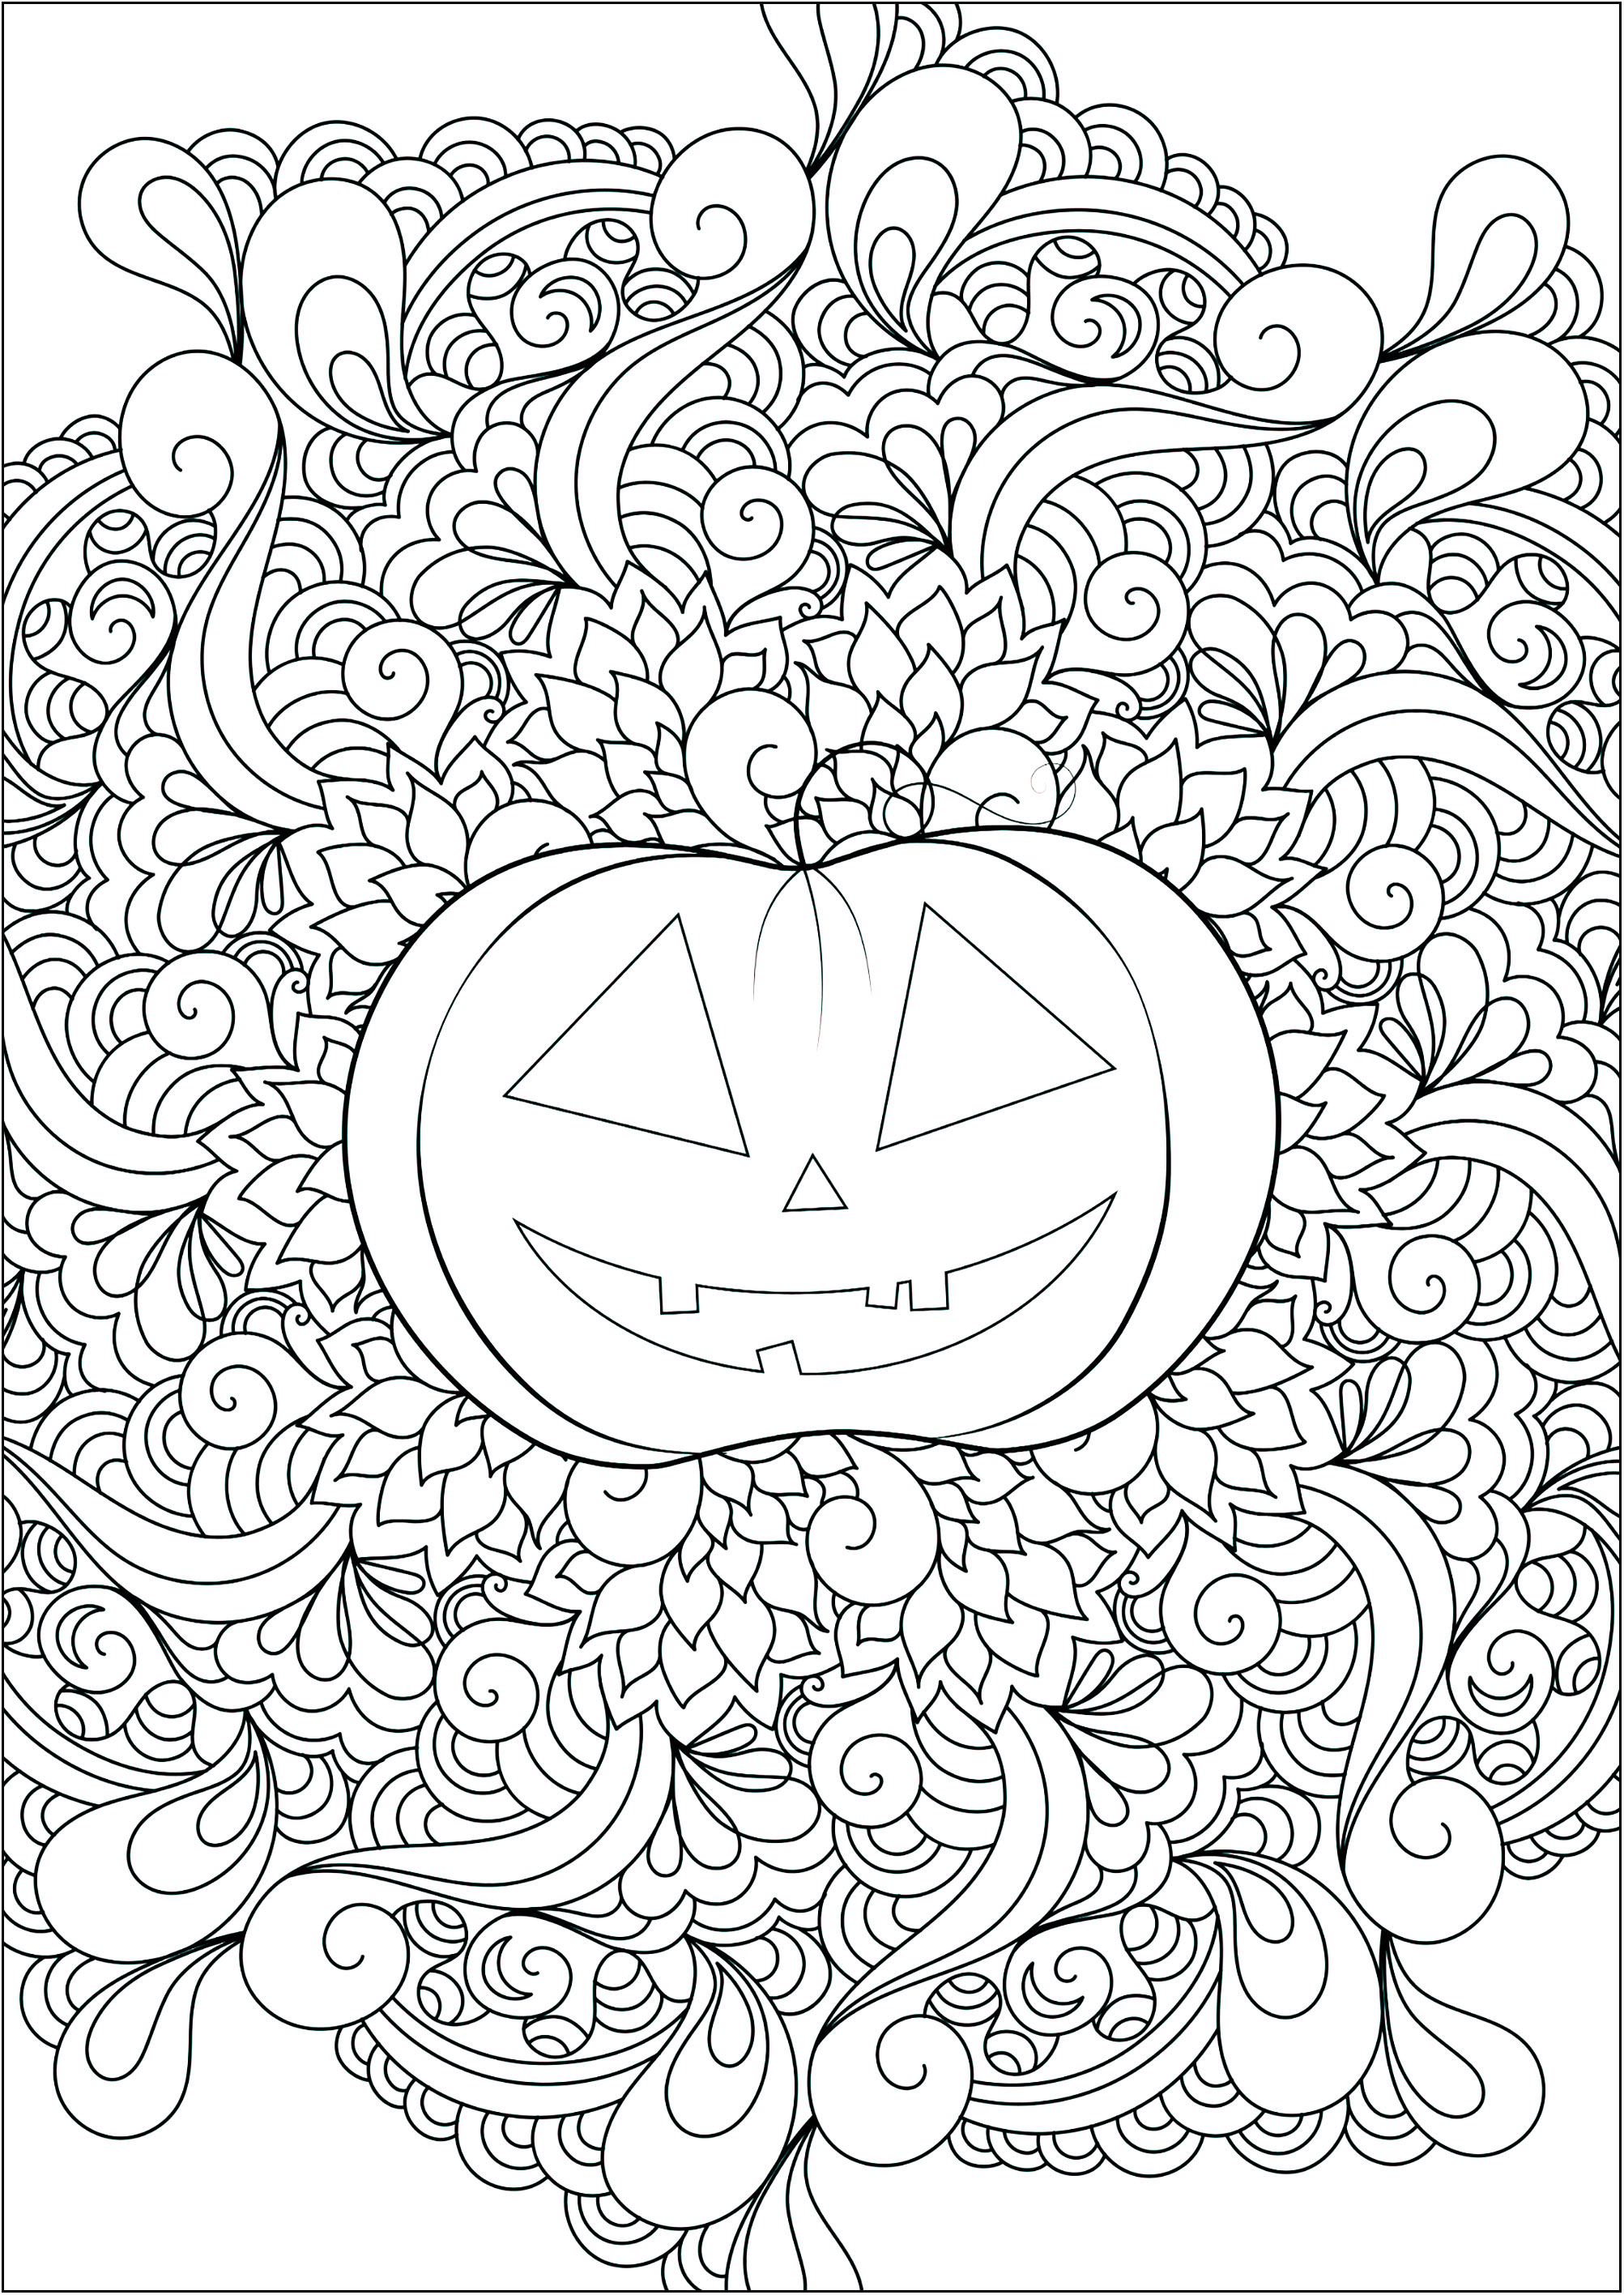 Graziosa zucca con motivi astratti al centro. Un libro da colorare perfetto per celebrare Halloween a colori .., Fonte : 123rf   Artista : Veronikaby